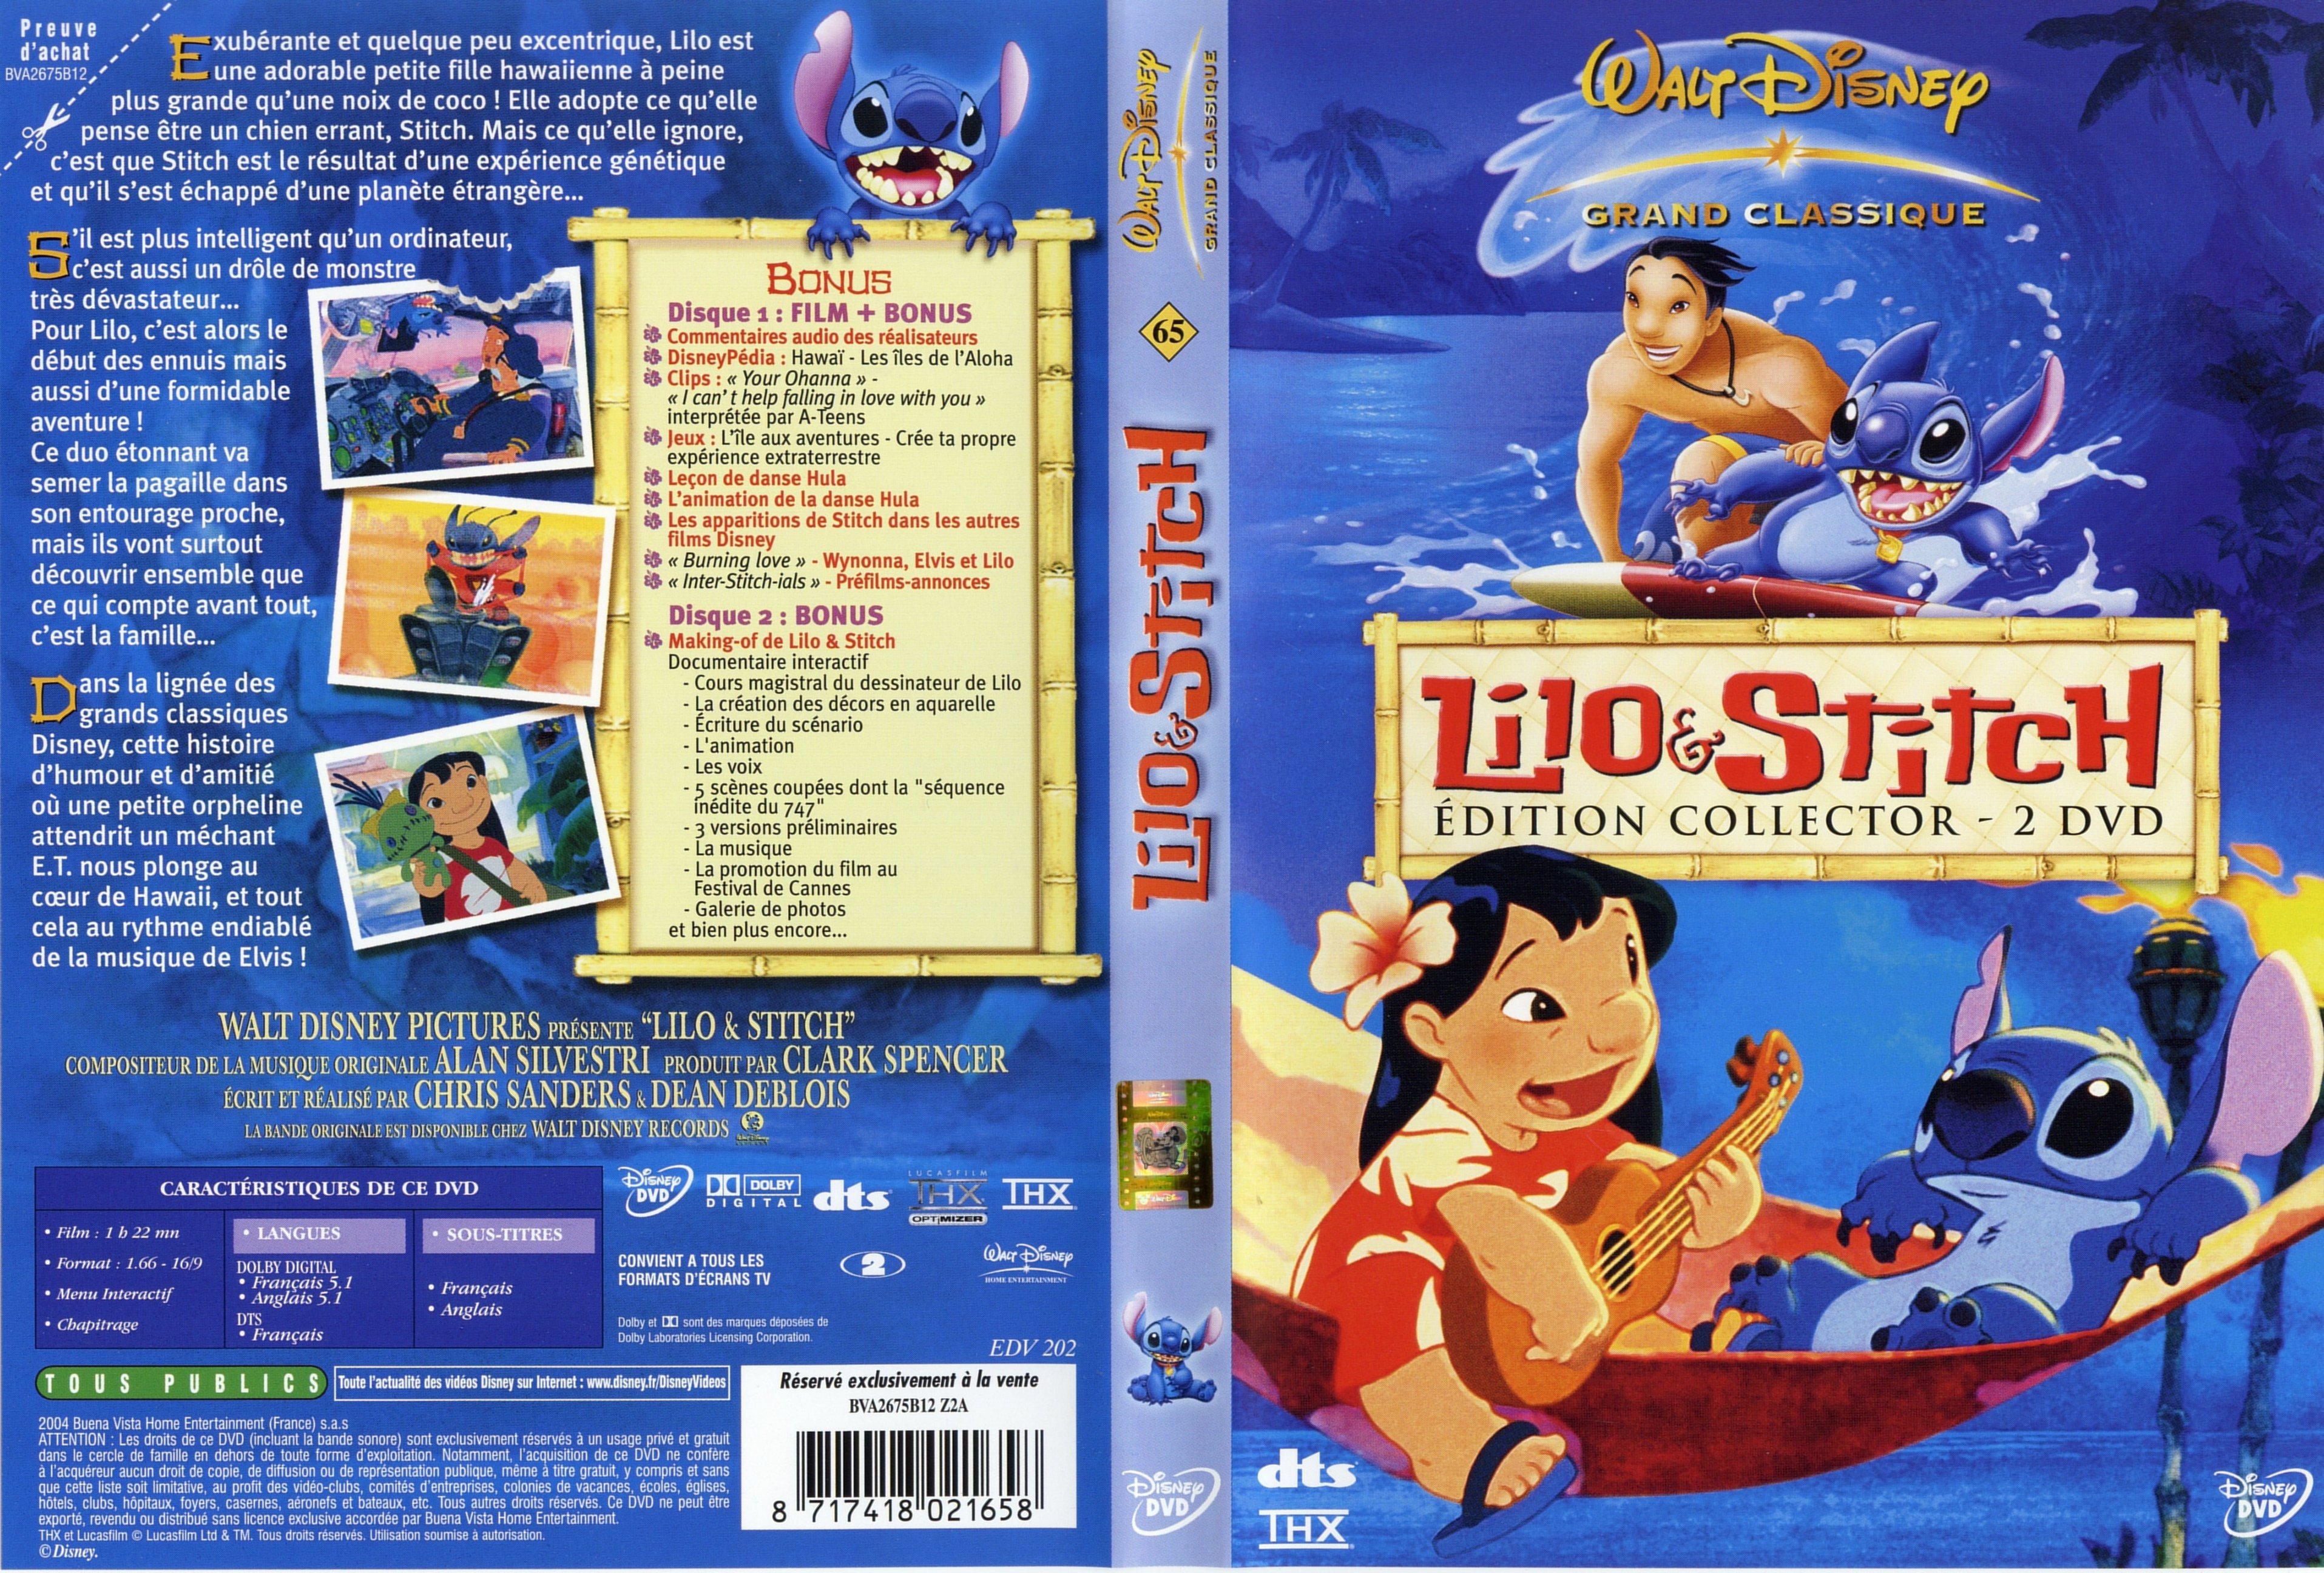 Jaquette DVD Lilo et Stitch.